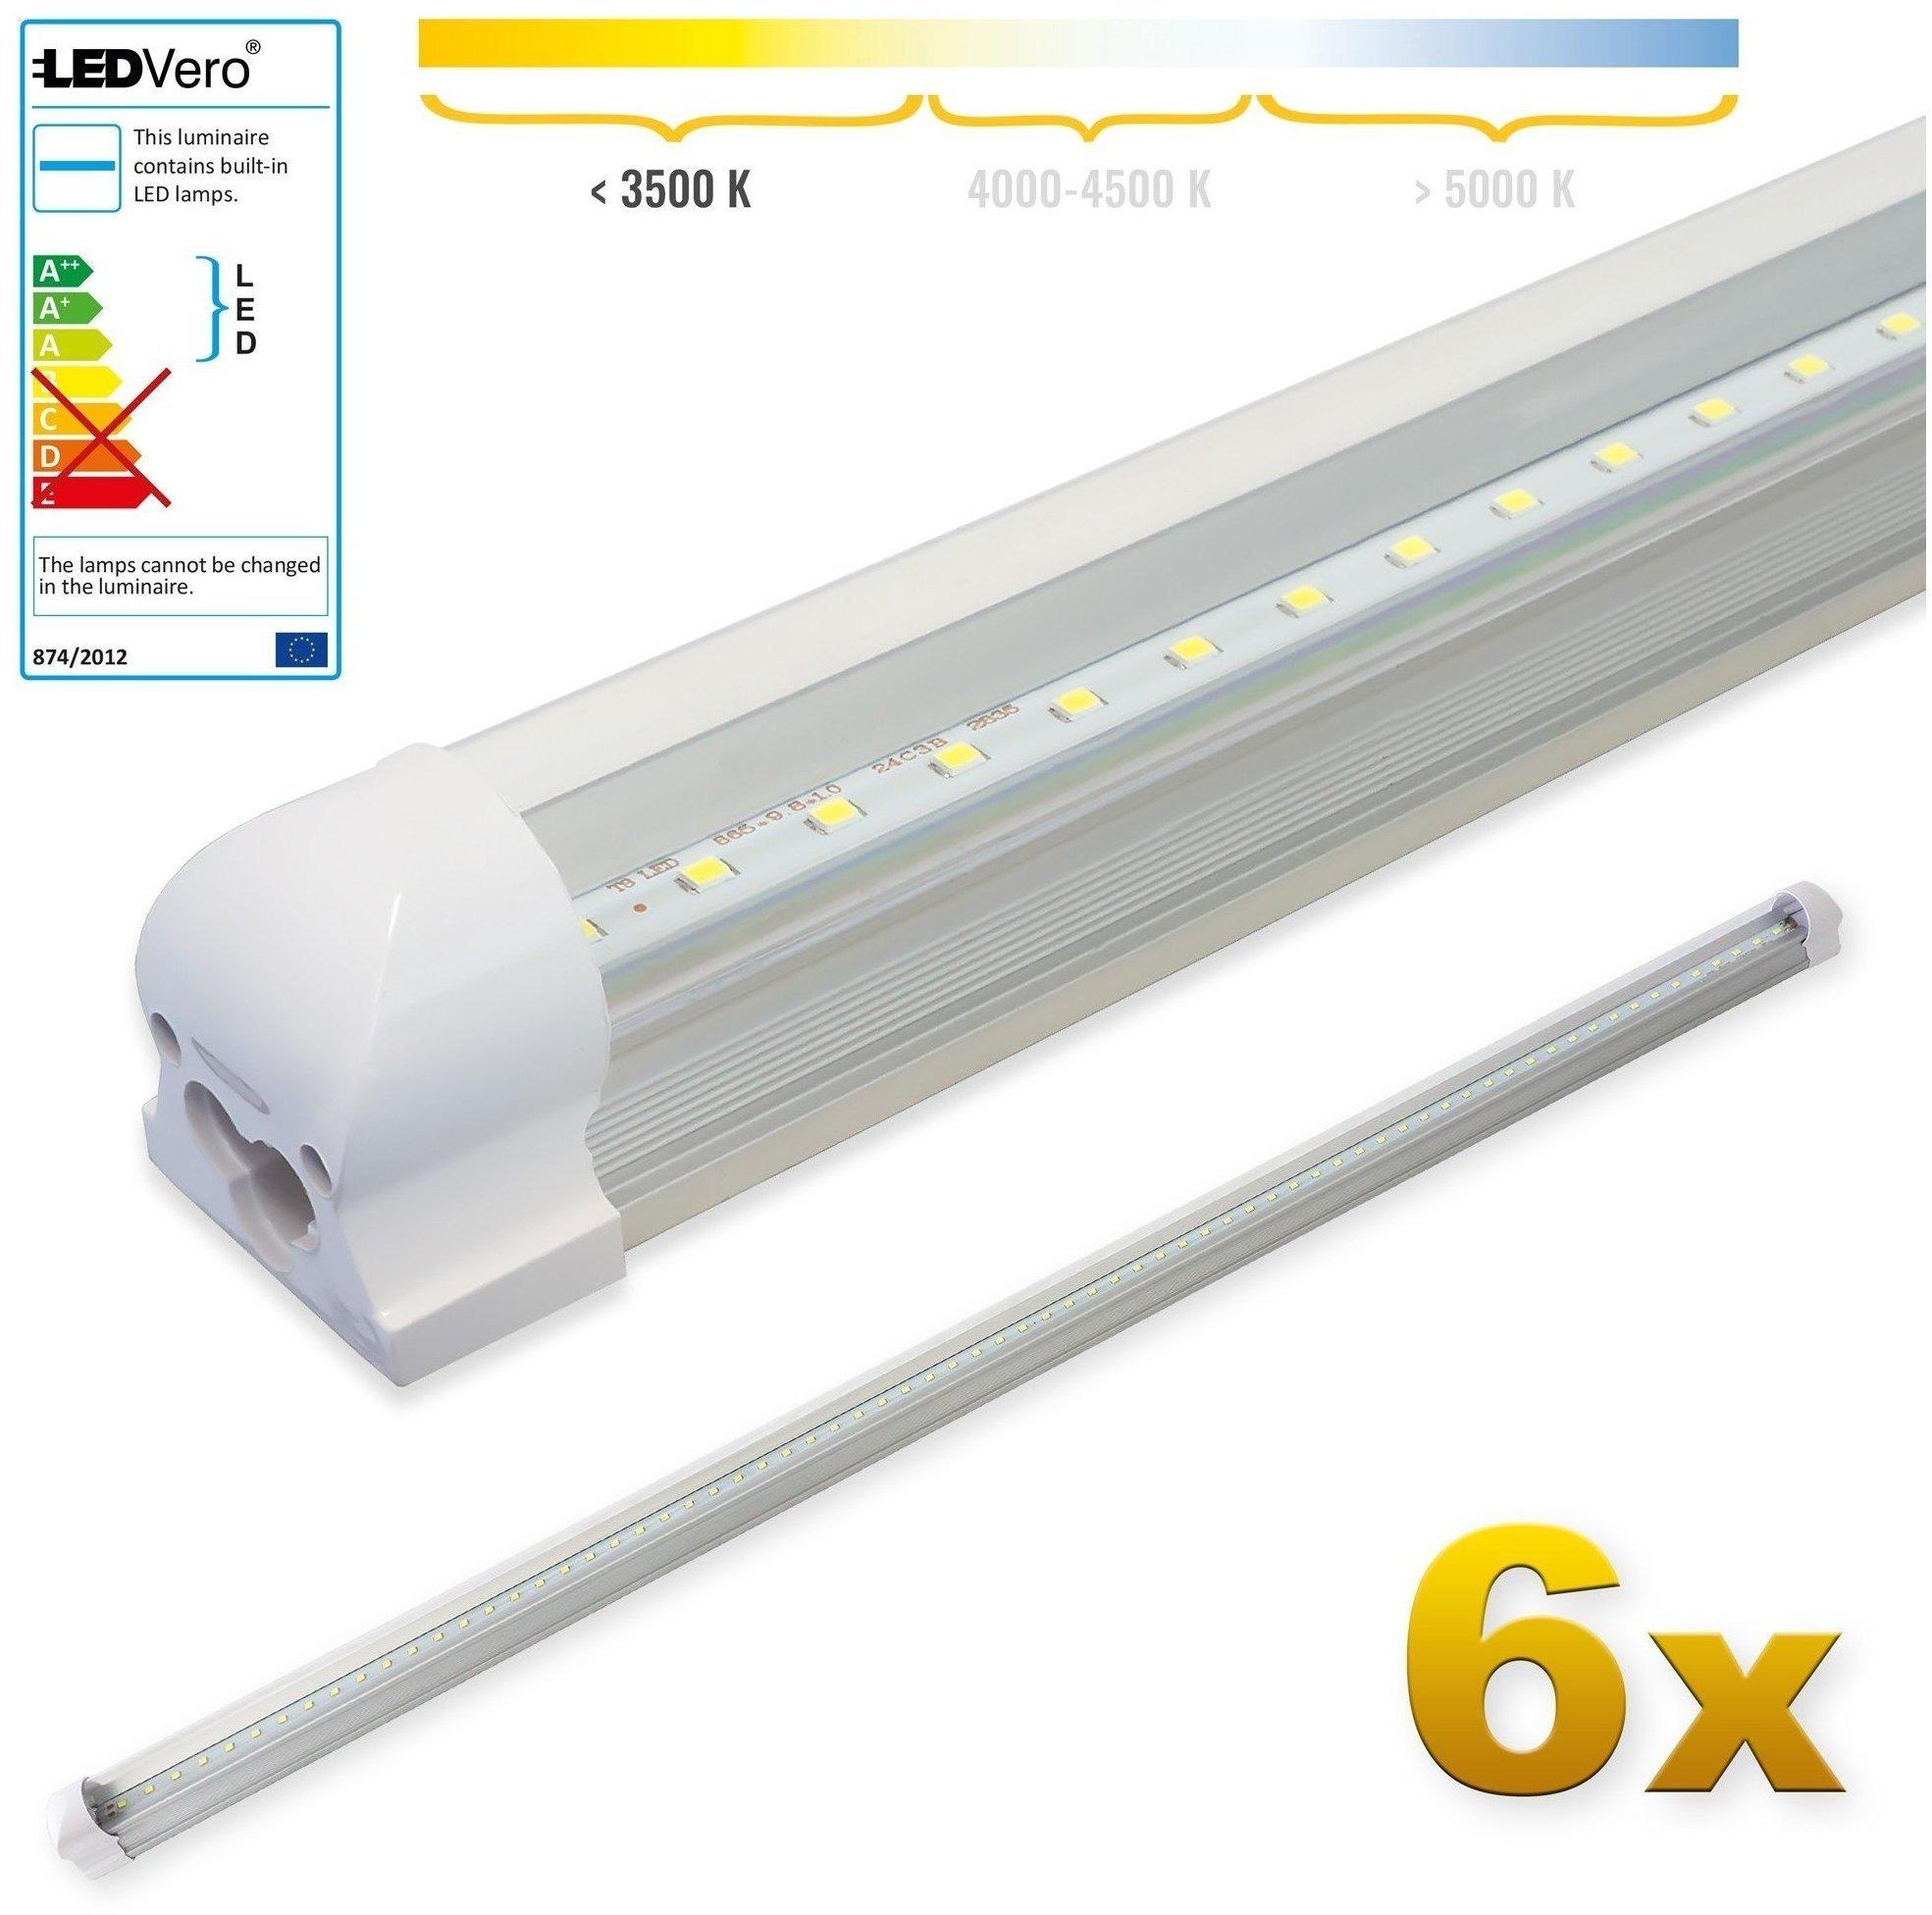 LEDVero 6x SMD LED Röhre 150 cm inklusive Fassung in warmweiss -  Leuchtstoffröhre T8 G13 Tube transparent Abdeckung - Lichtleiste mit 25 W,  2500lm- montagefertig Test TOP Angebote ab 87,59 € (März 2023)